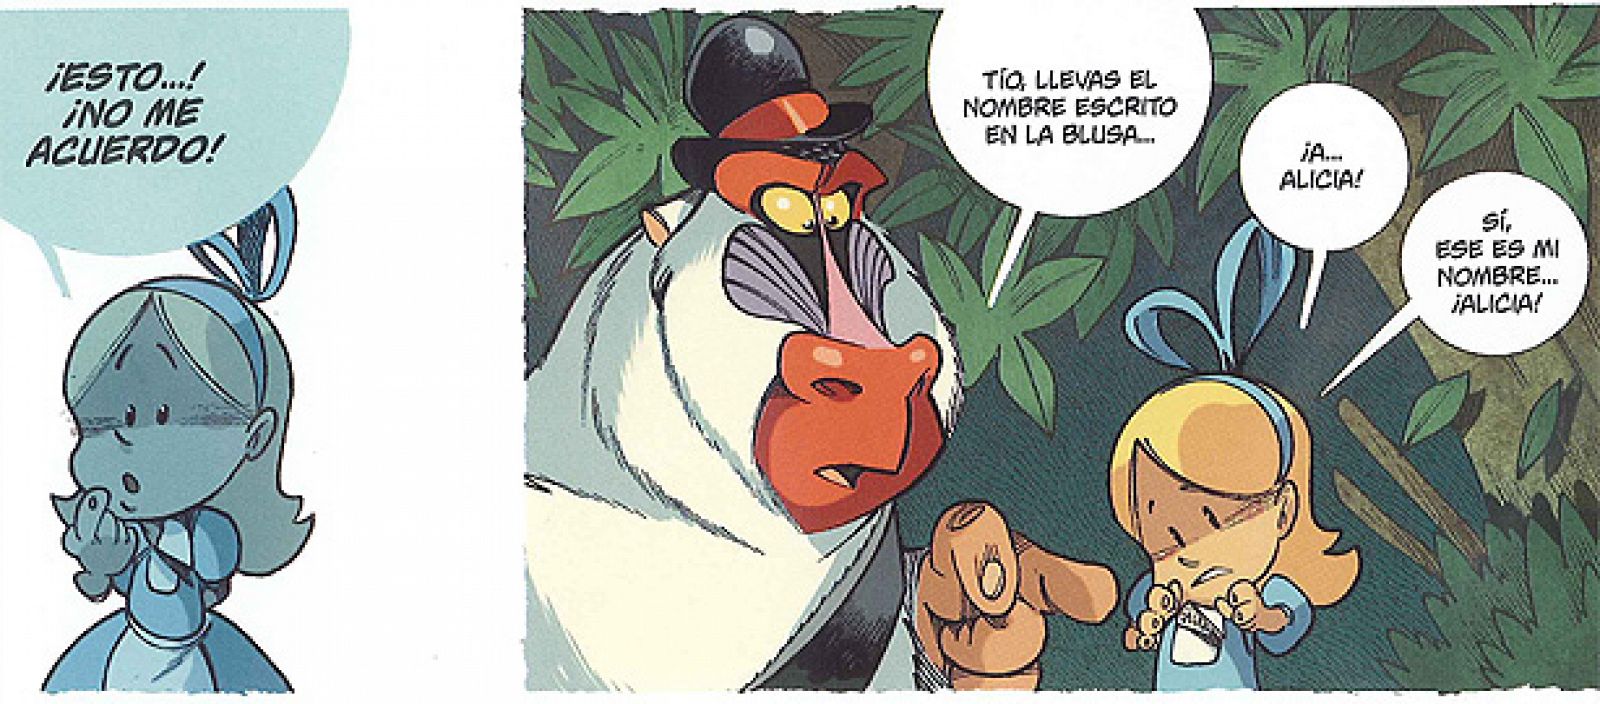 Viñetas de 'Alicia en el país de los monos', de Tebo y Keramidas